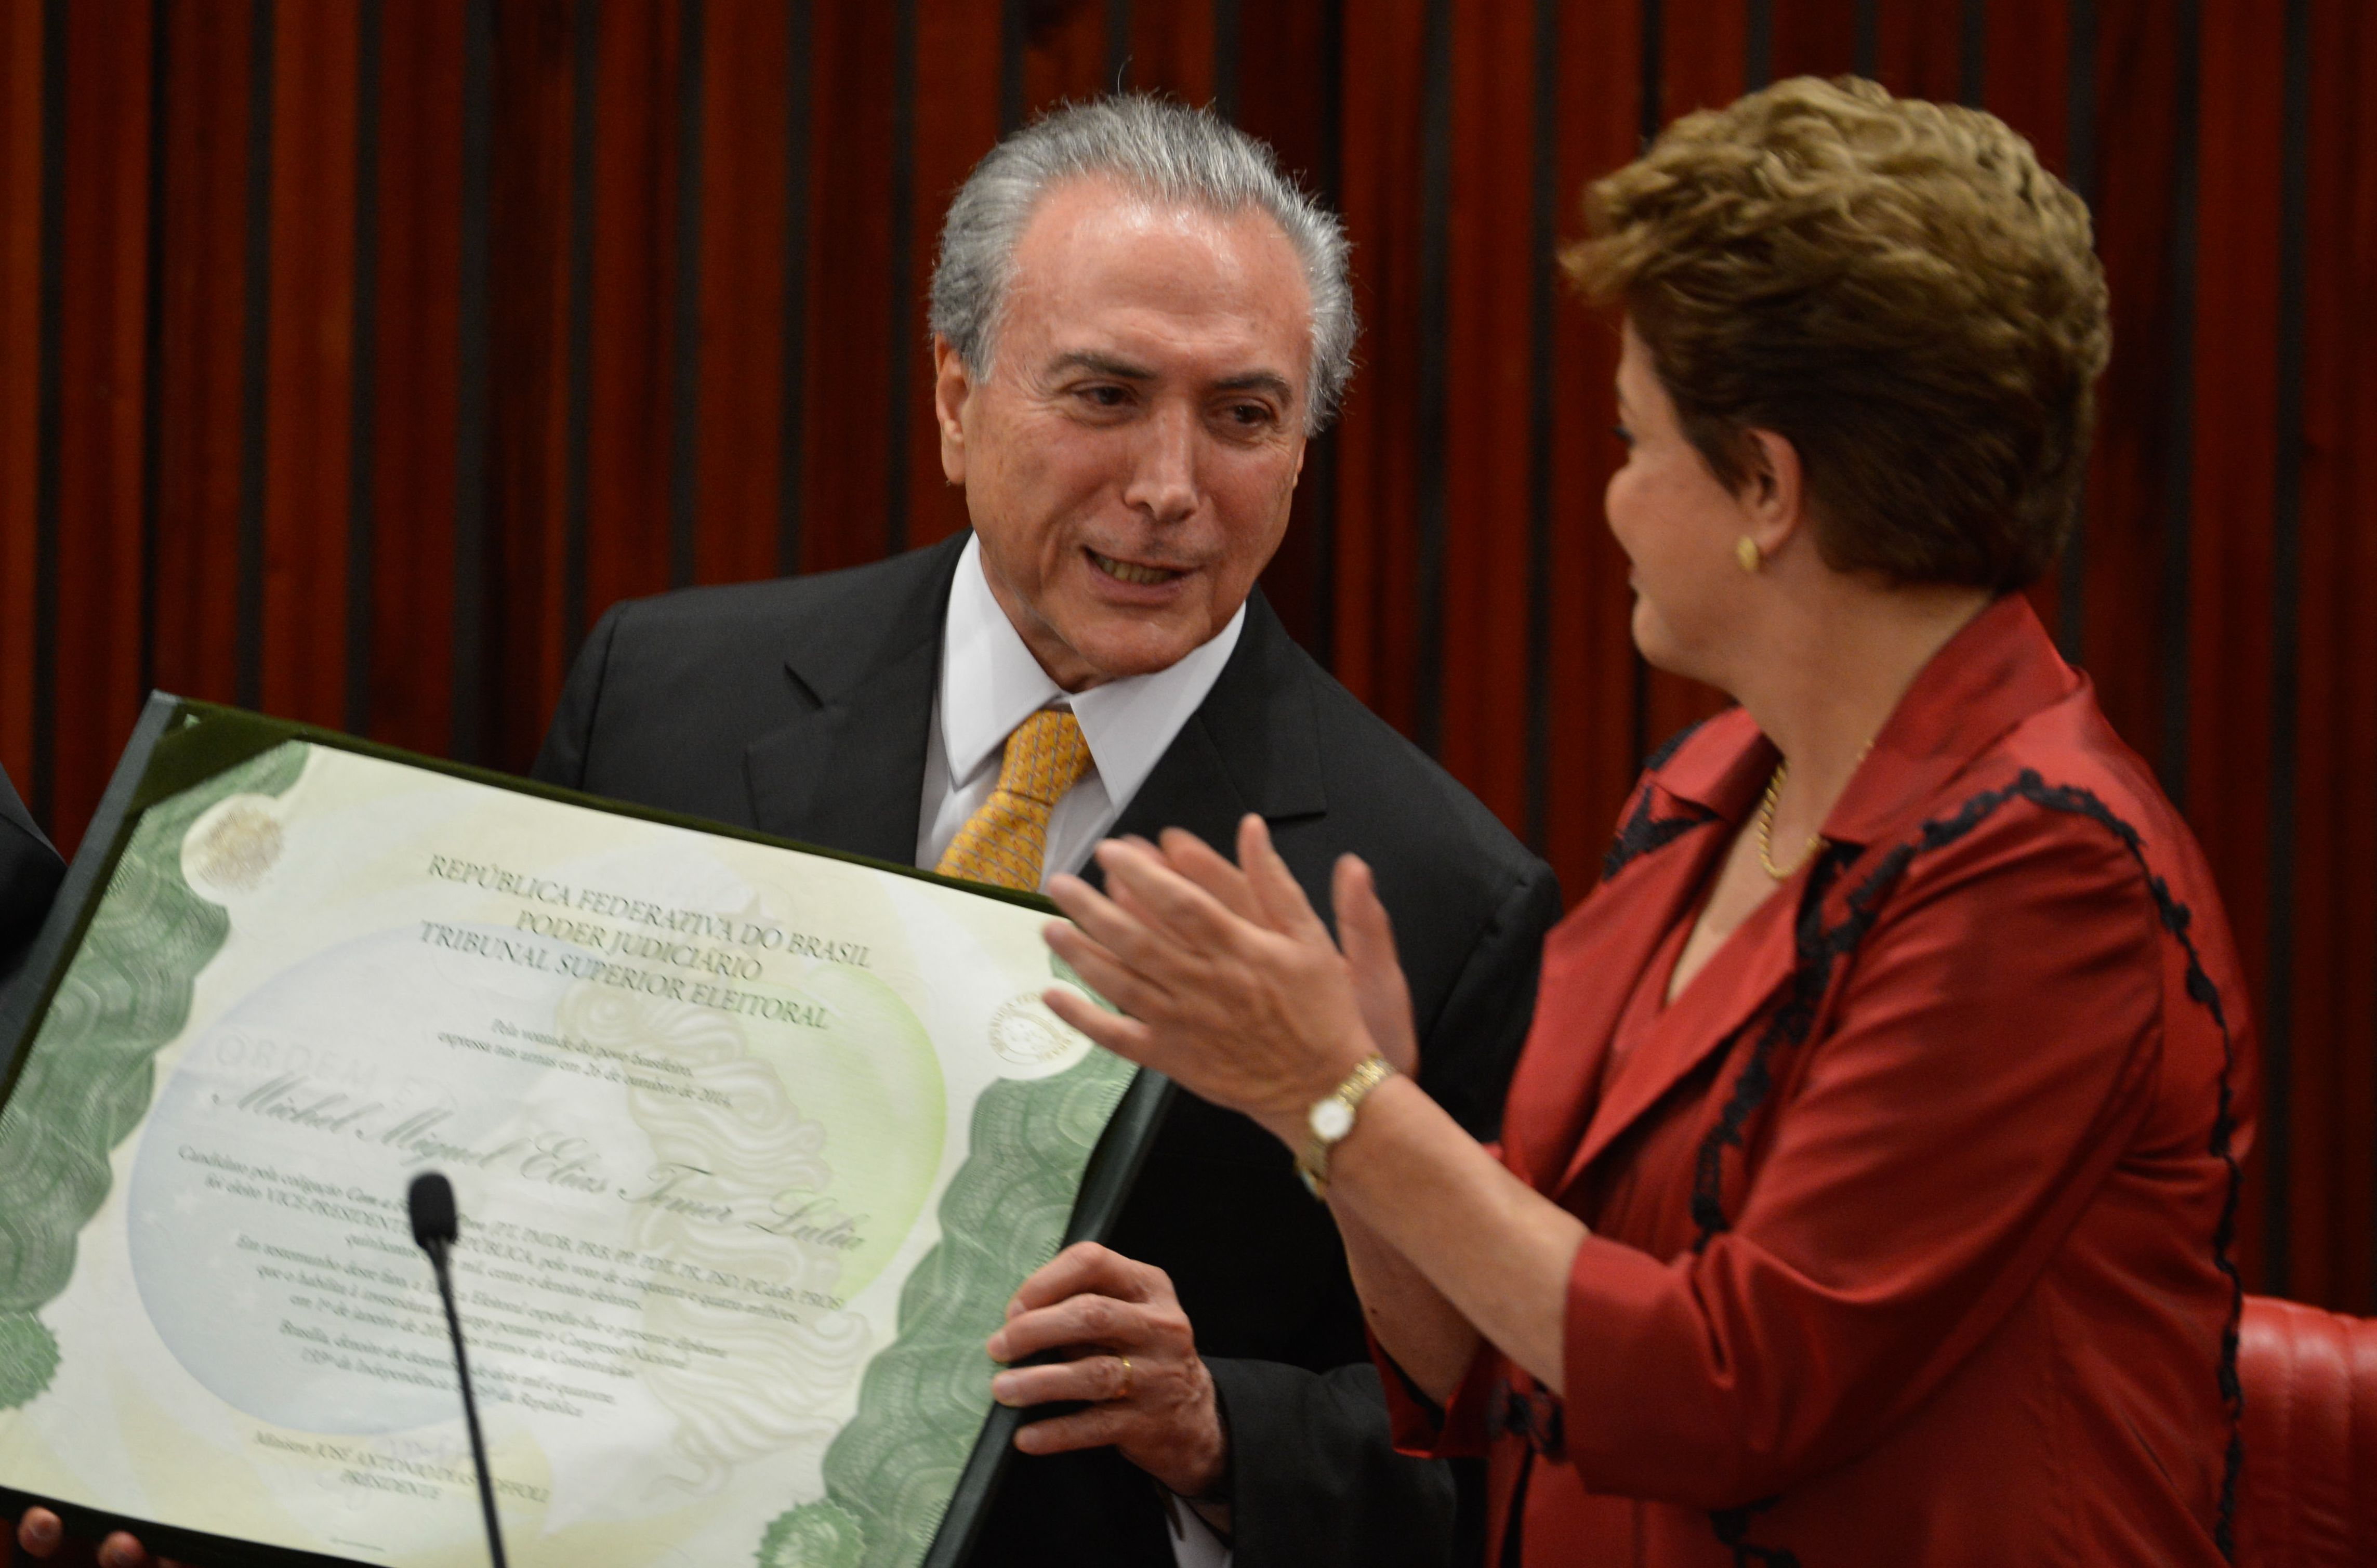 Em 2014, Temer e Dilma tomavam posse como vice e presidente. Muita coisa mudou entretanto.